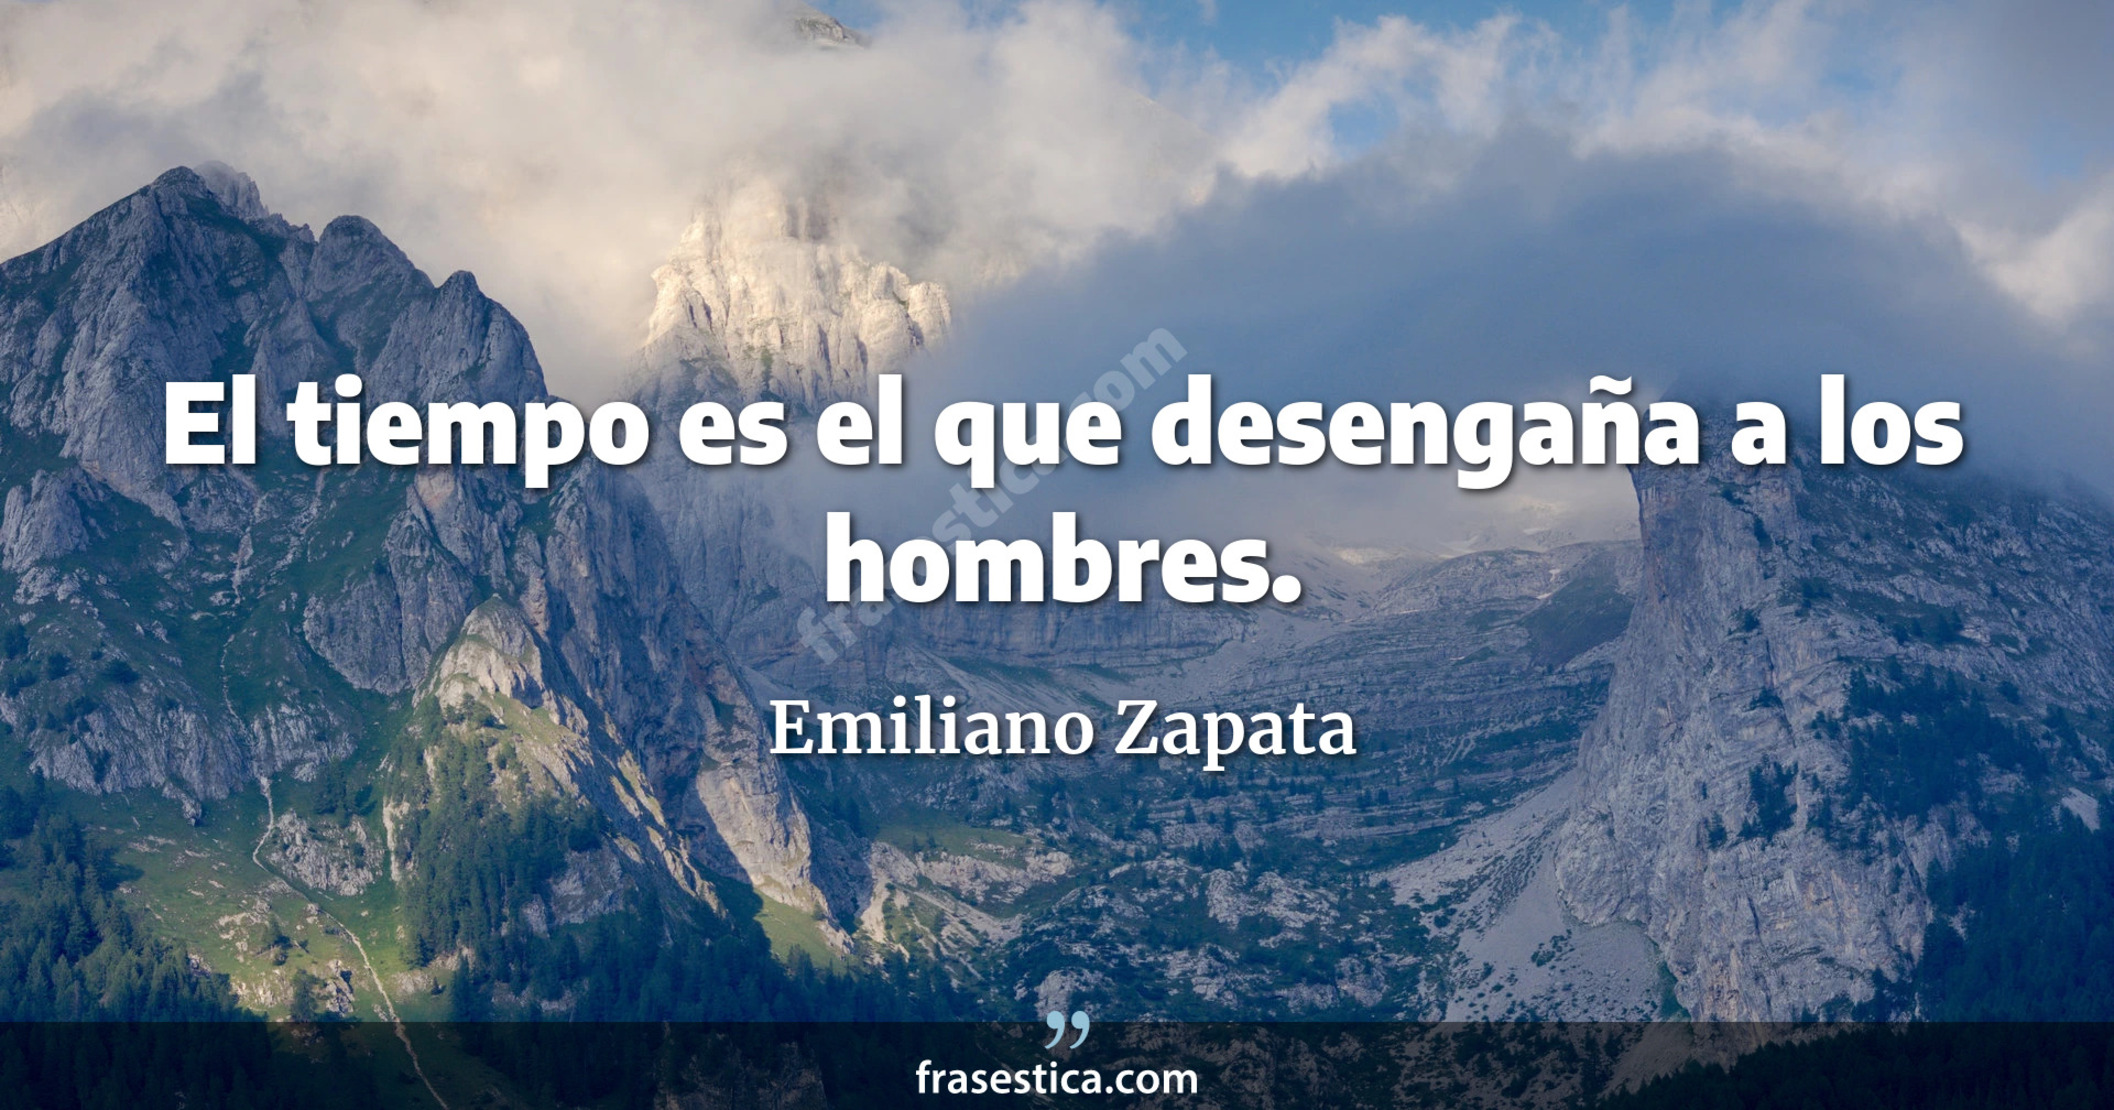 El tiempo es el que desengaña a los hombres. - Emiliano Zapata